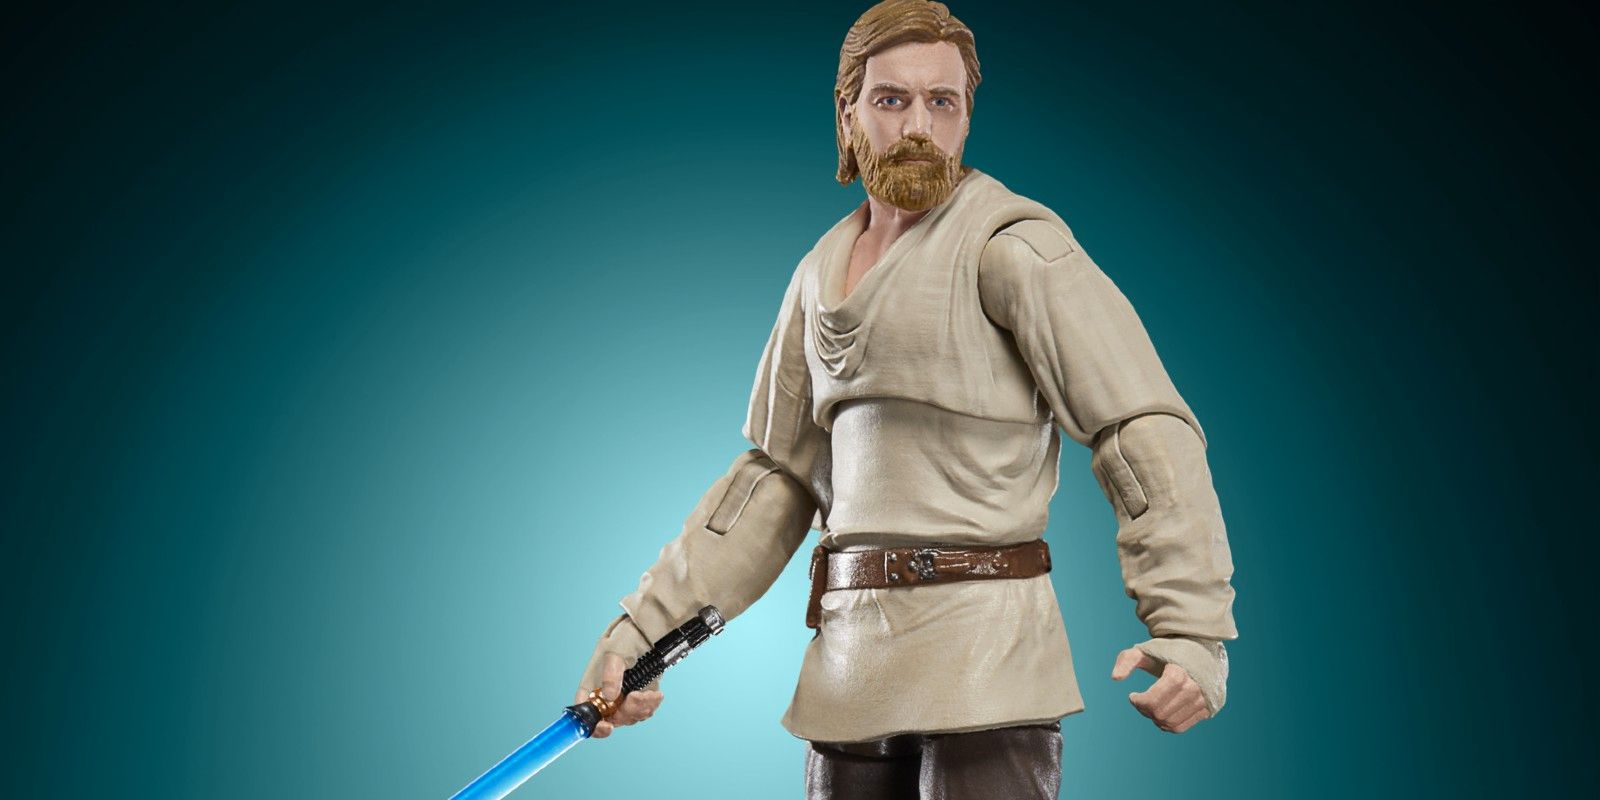 EXCLUSIVO: Nueva figura de Obi-Wan Kenobi basada en la serie Disney+ revelada